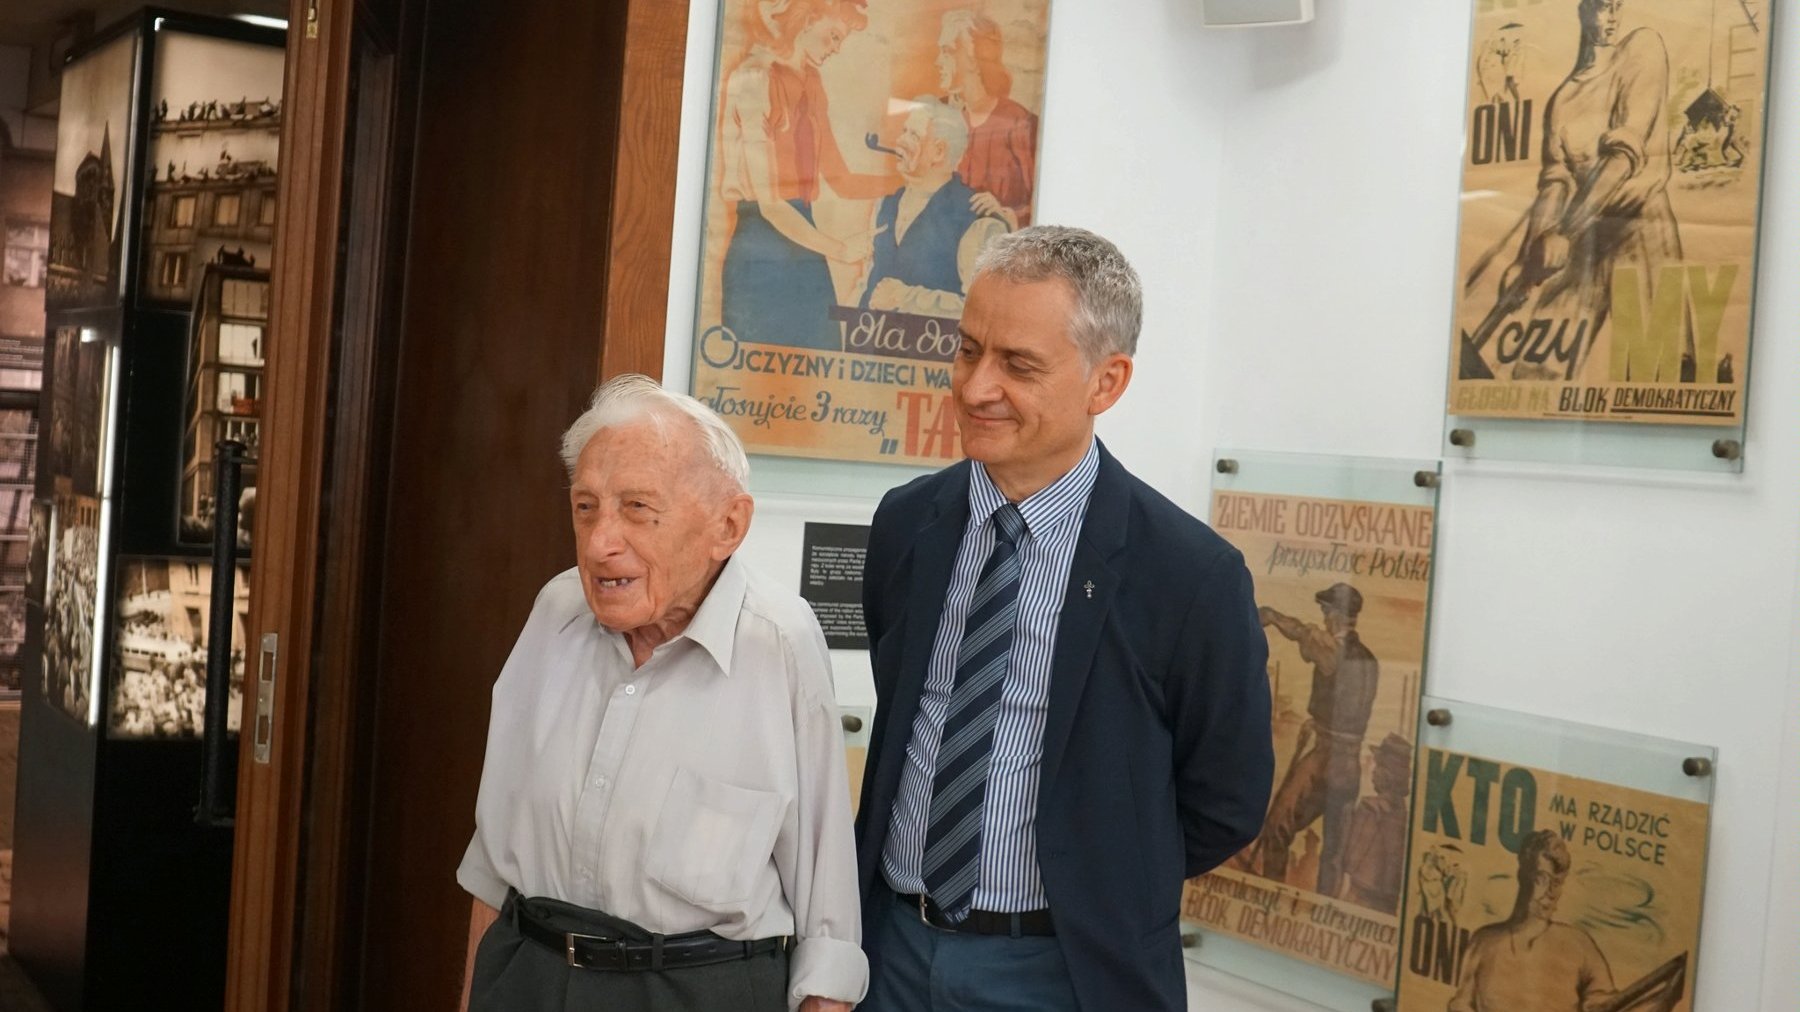 Dwóch mężczyzn. Po lewej starszy - Zenon Wechmann. Po prawej dyrektor muzeum. Mężczyźni stoją na tle plakatów propagandowych z okresu PRL-u.